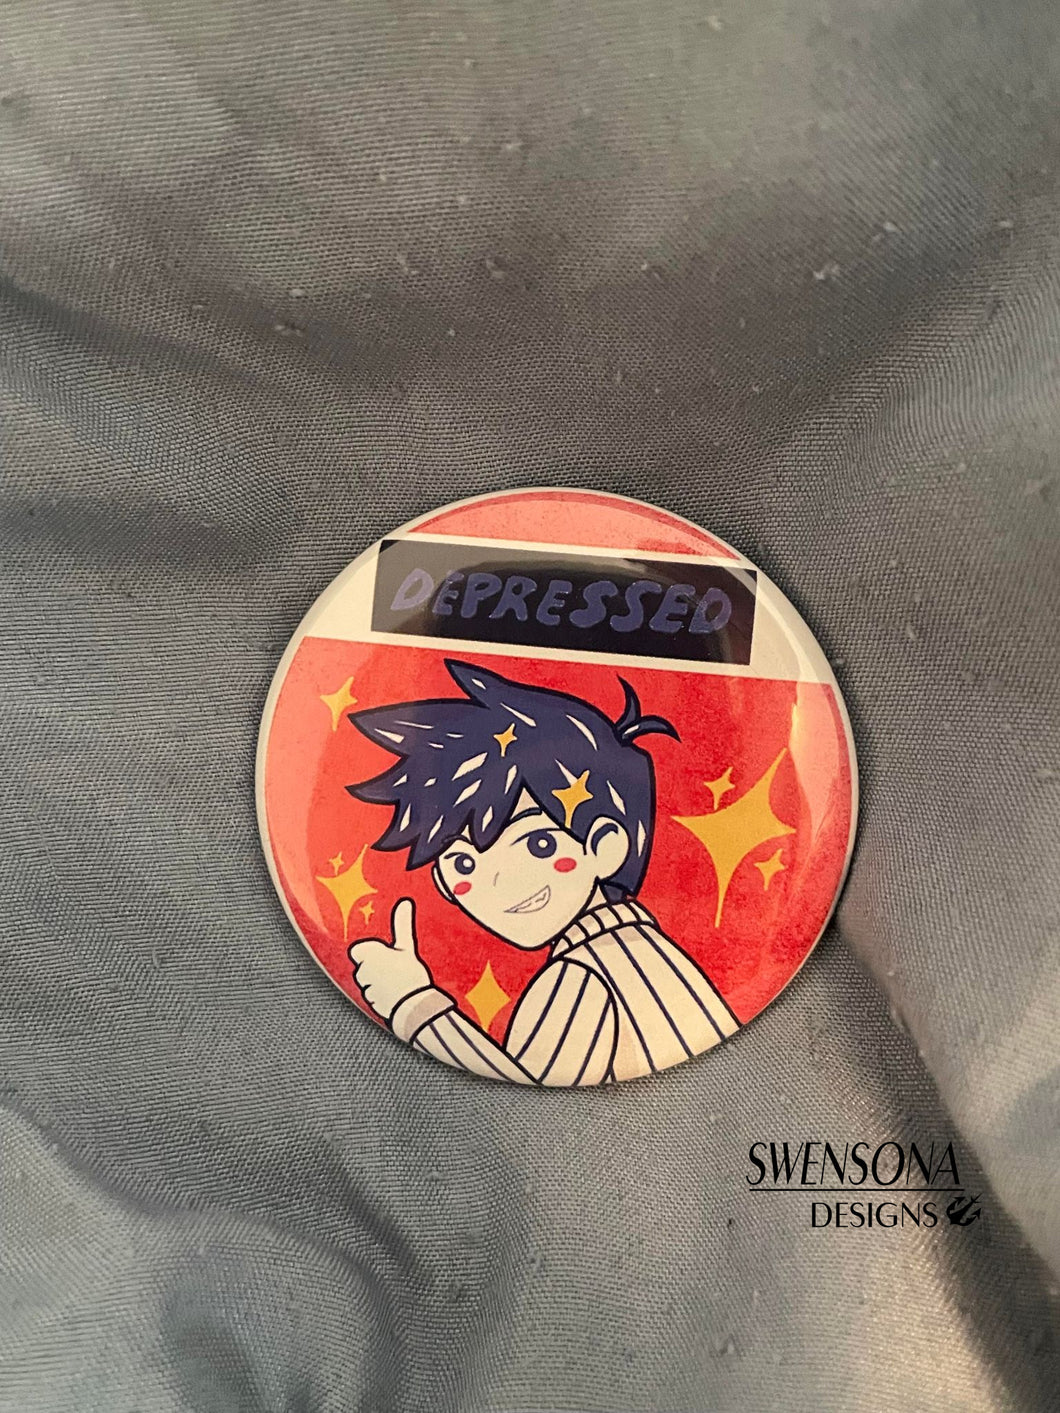 Depressed Hiro Button Badge